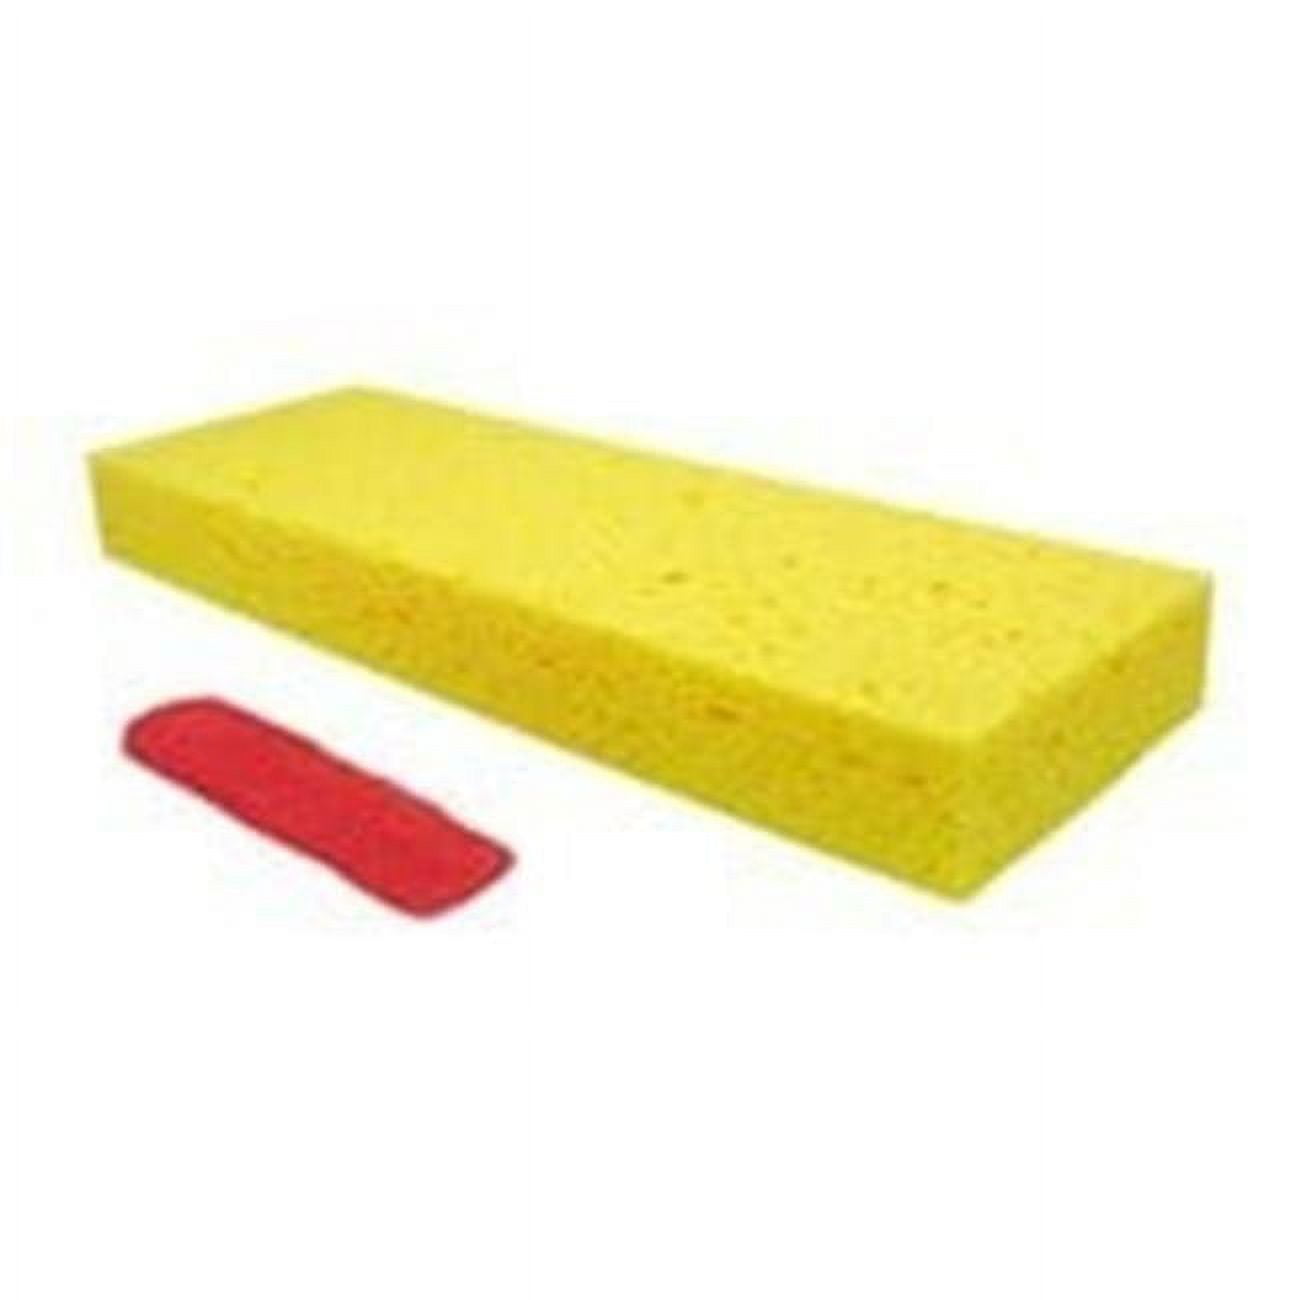 PRO-SOURCE 12 inch Long Polypropylene Foam Head Sponge Mop Metal